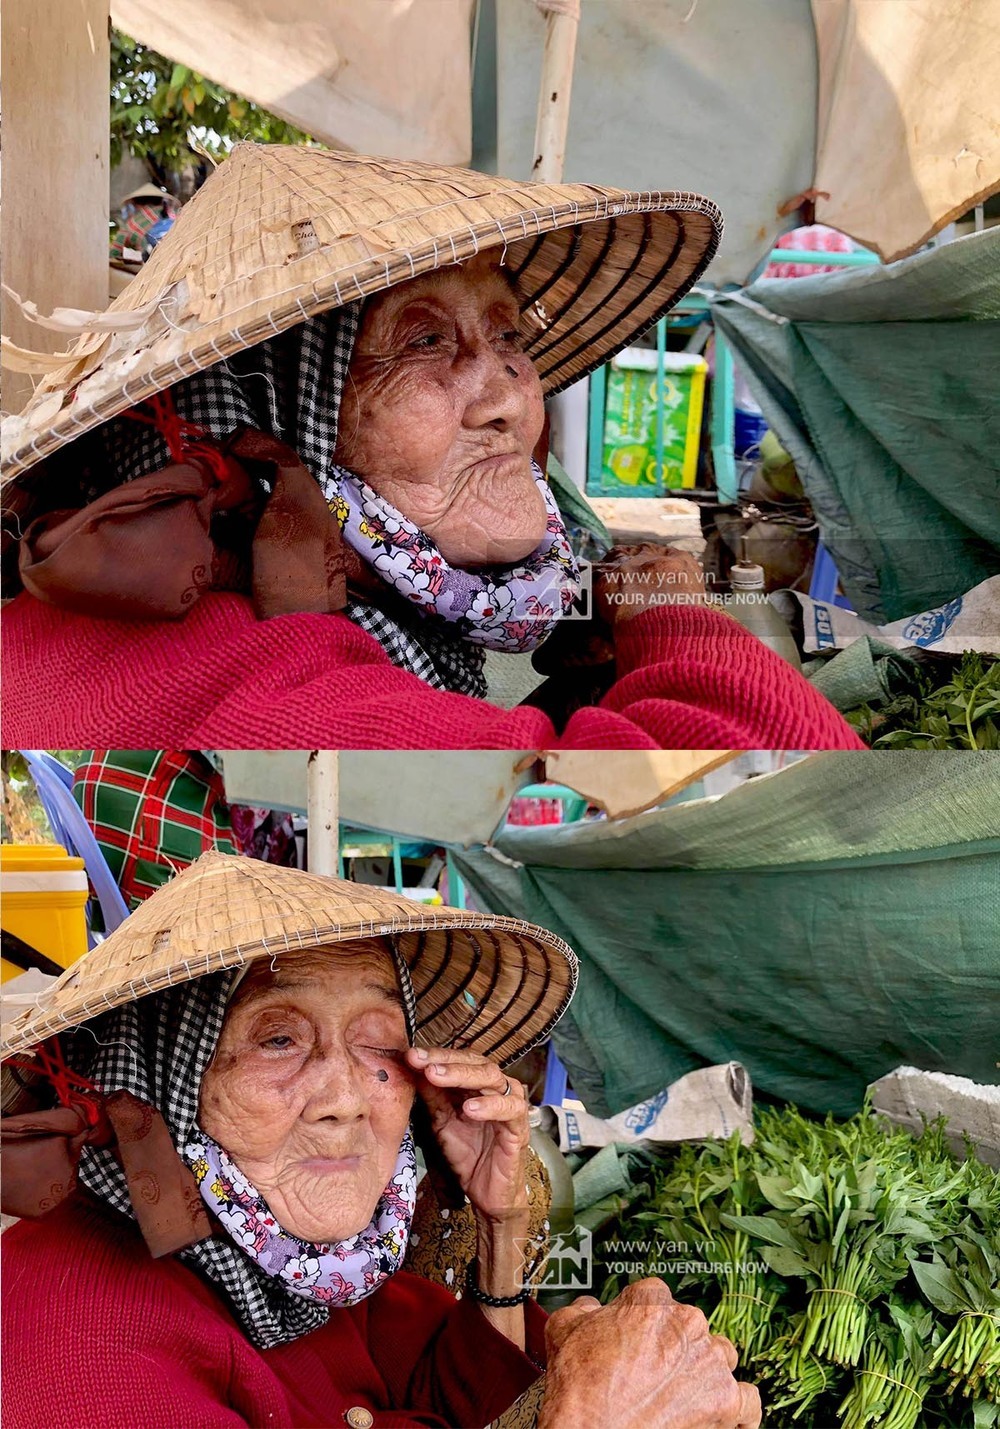  
Bà cụ 81 tuổi đội nắng mưu sinh giữa Sài Gòn.